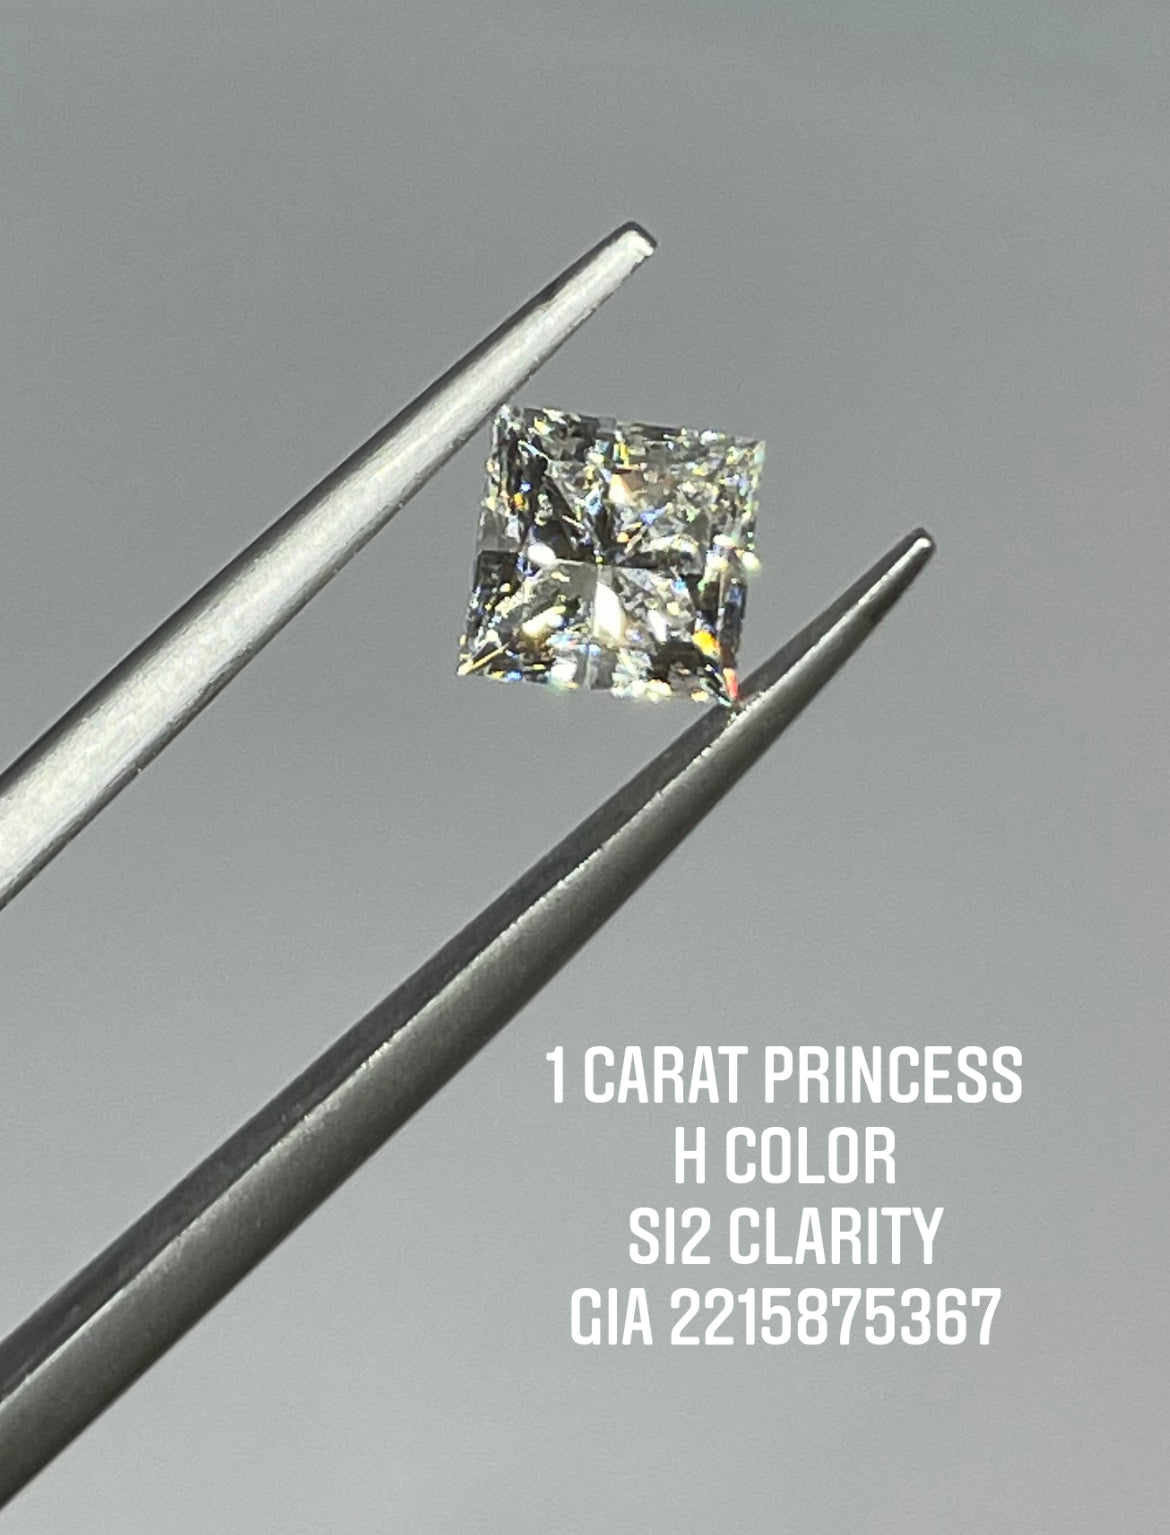 1.00 Carat Princess Cut Diamond H , SI2 , GIA Certified 5211949195